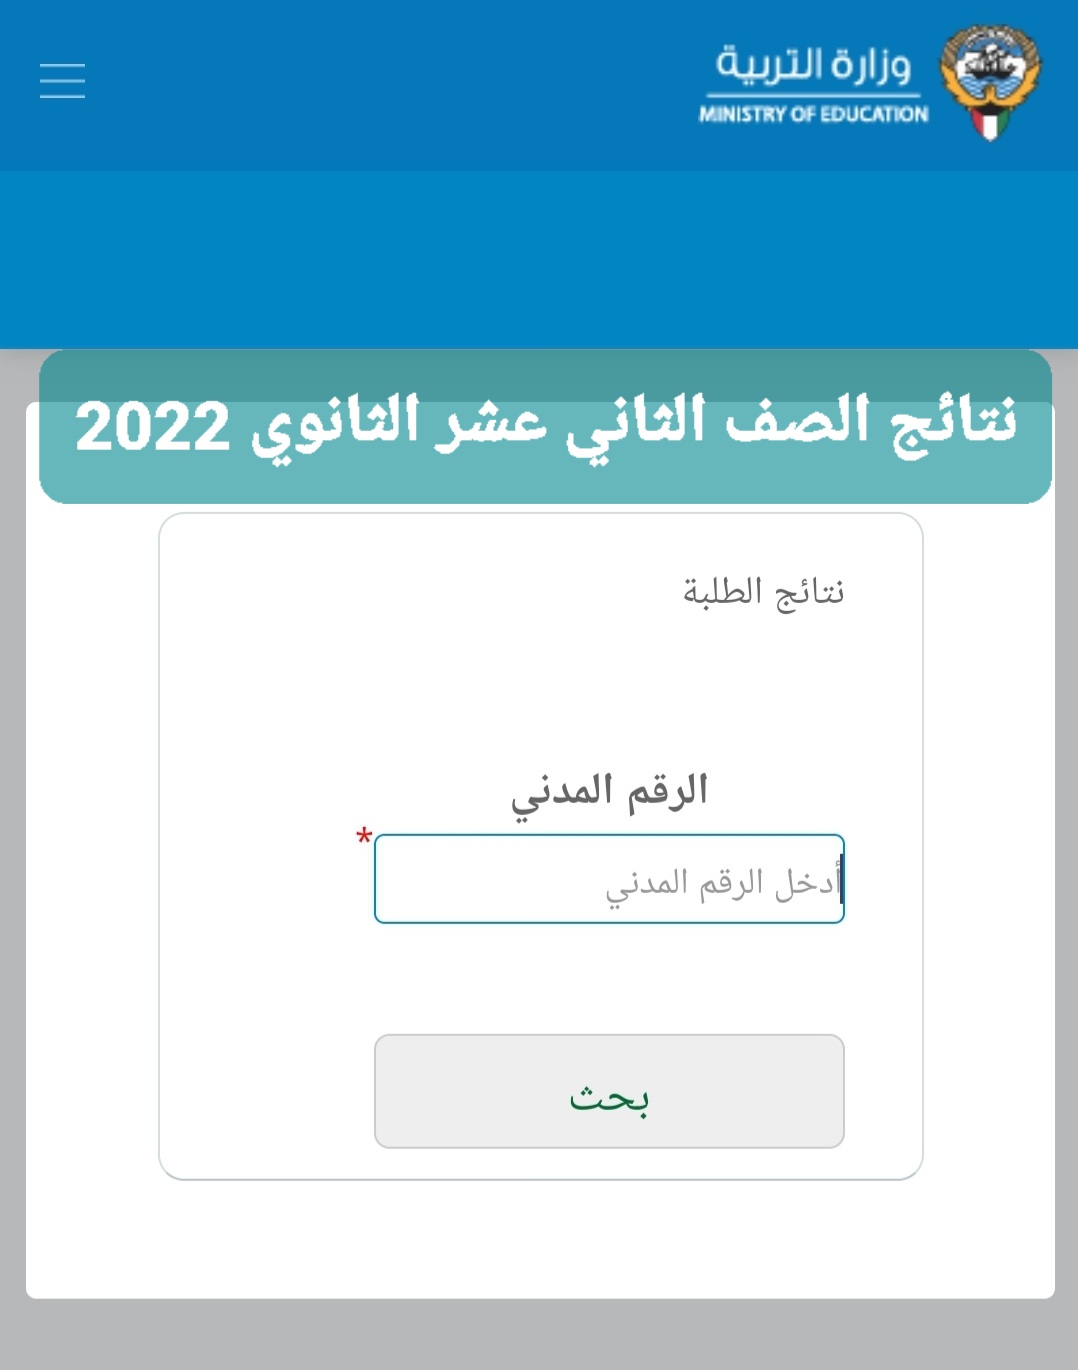 رَابِط فَعَّال.. الآن نتائج الصف الثاني عشر 2022 بالرقم المدني عبر  موقع وزارة التربية لنتائج الثانوية العامة الكويت 2022